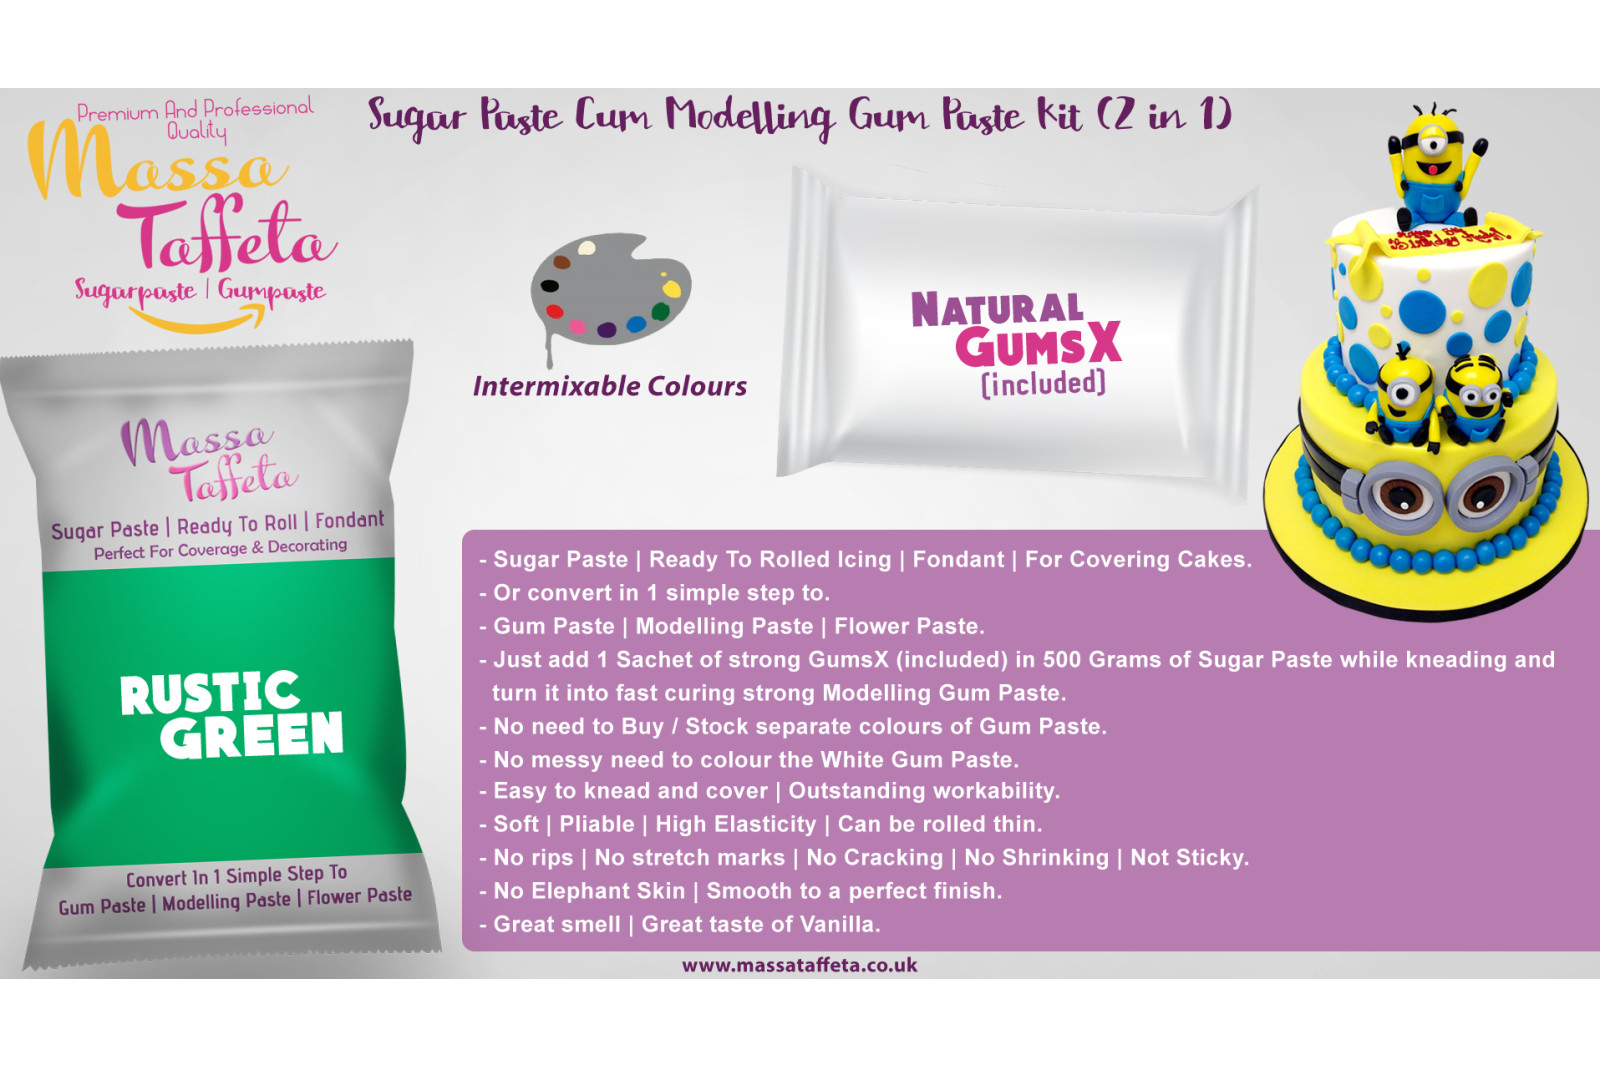 Rustic Green | Massa Taffeta | Sugar Paste Cum Modelling Gum Paste Kit (2 in 1)